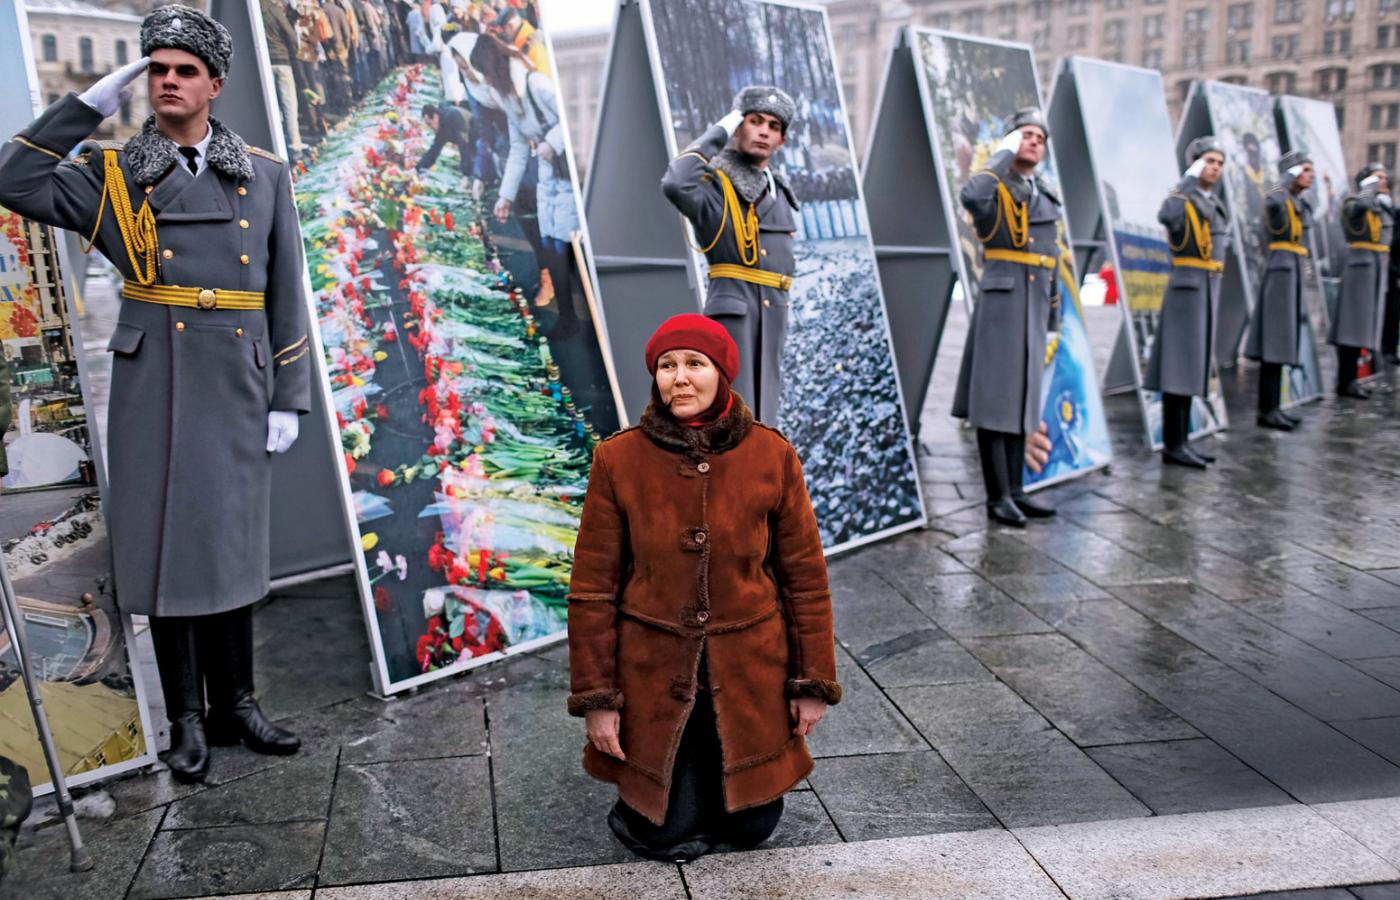 Kijów, uroczysty pogrzeb ofiar walk w Donbasie